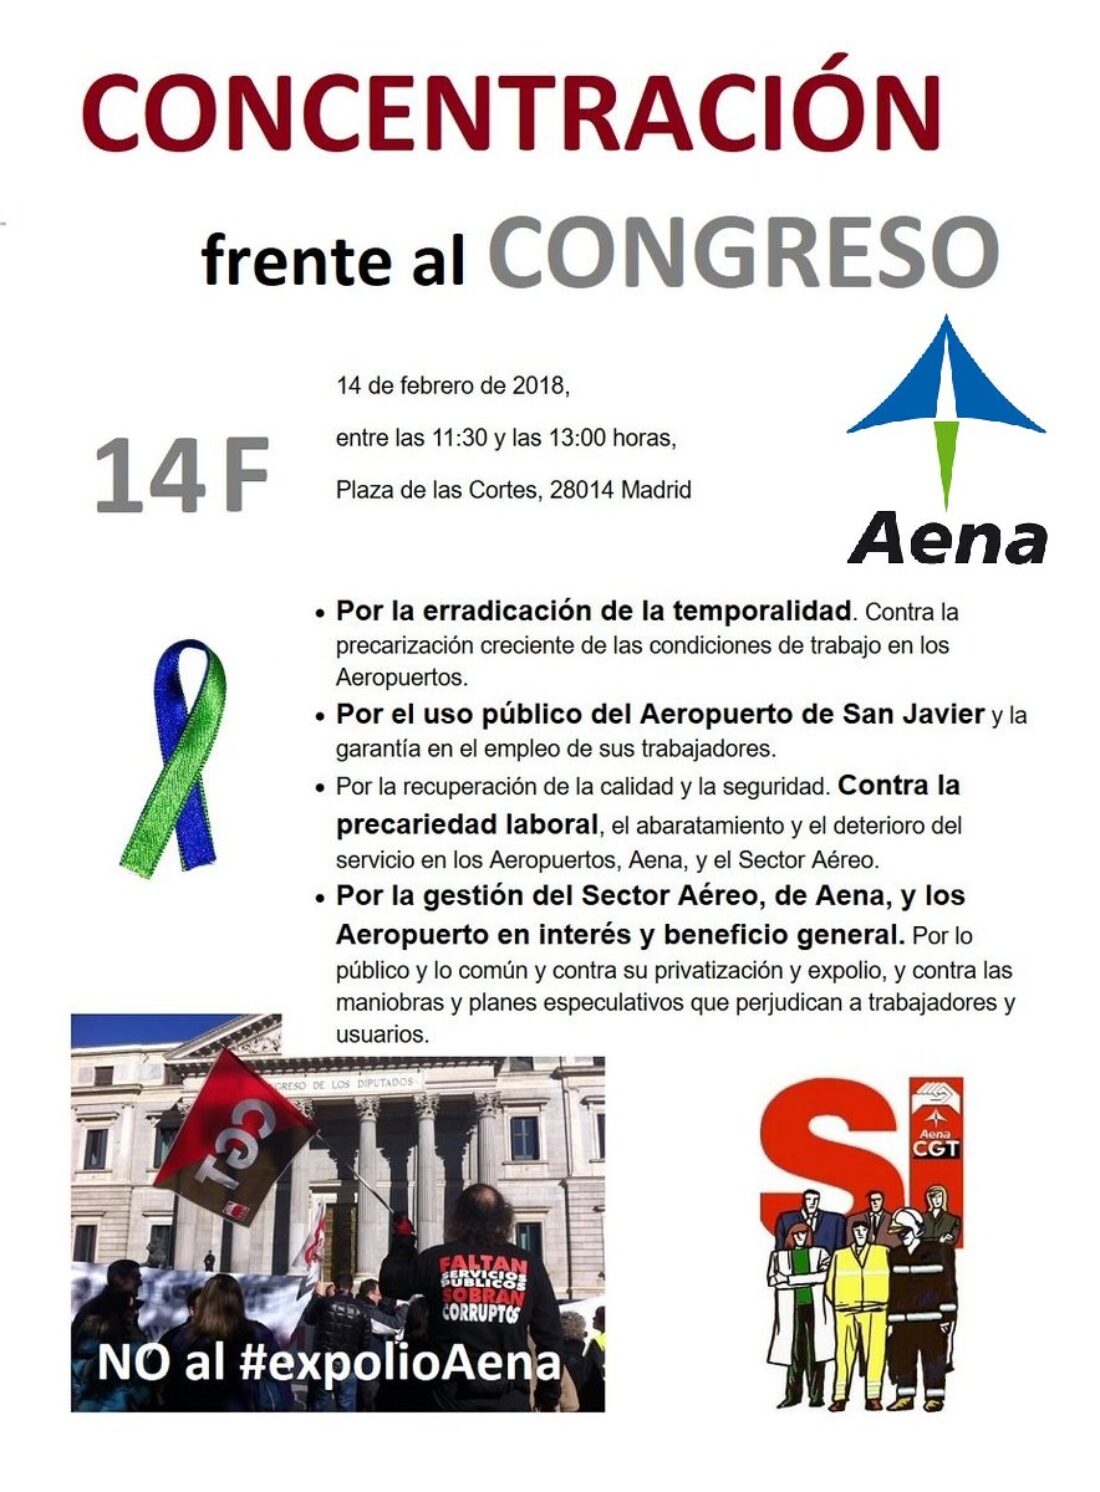 Las trabajadoras y trabajadores de Aena se concentraran frente al Congreso el miercoles 14 de febrero